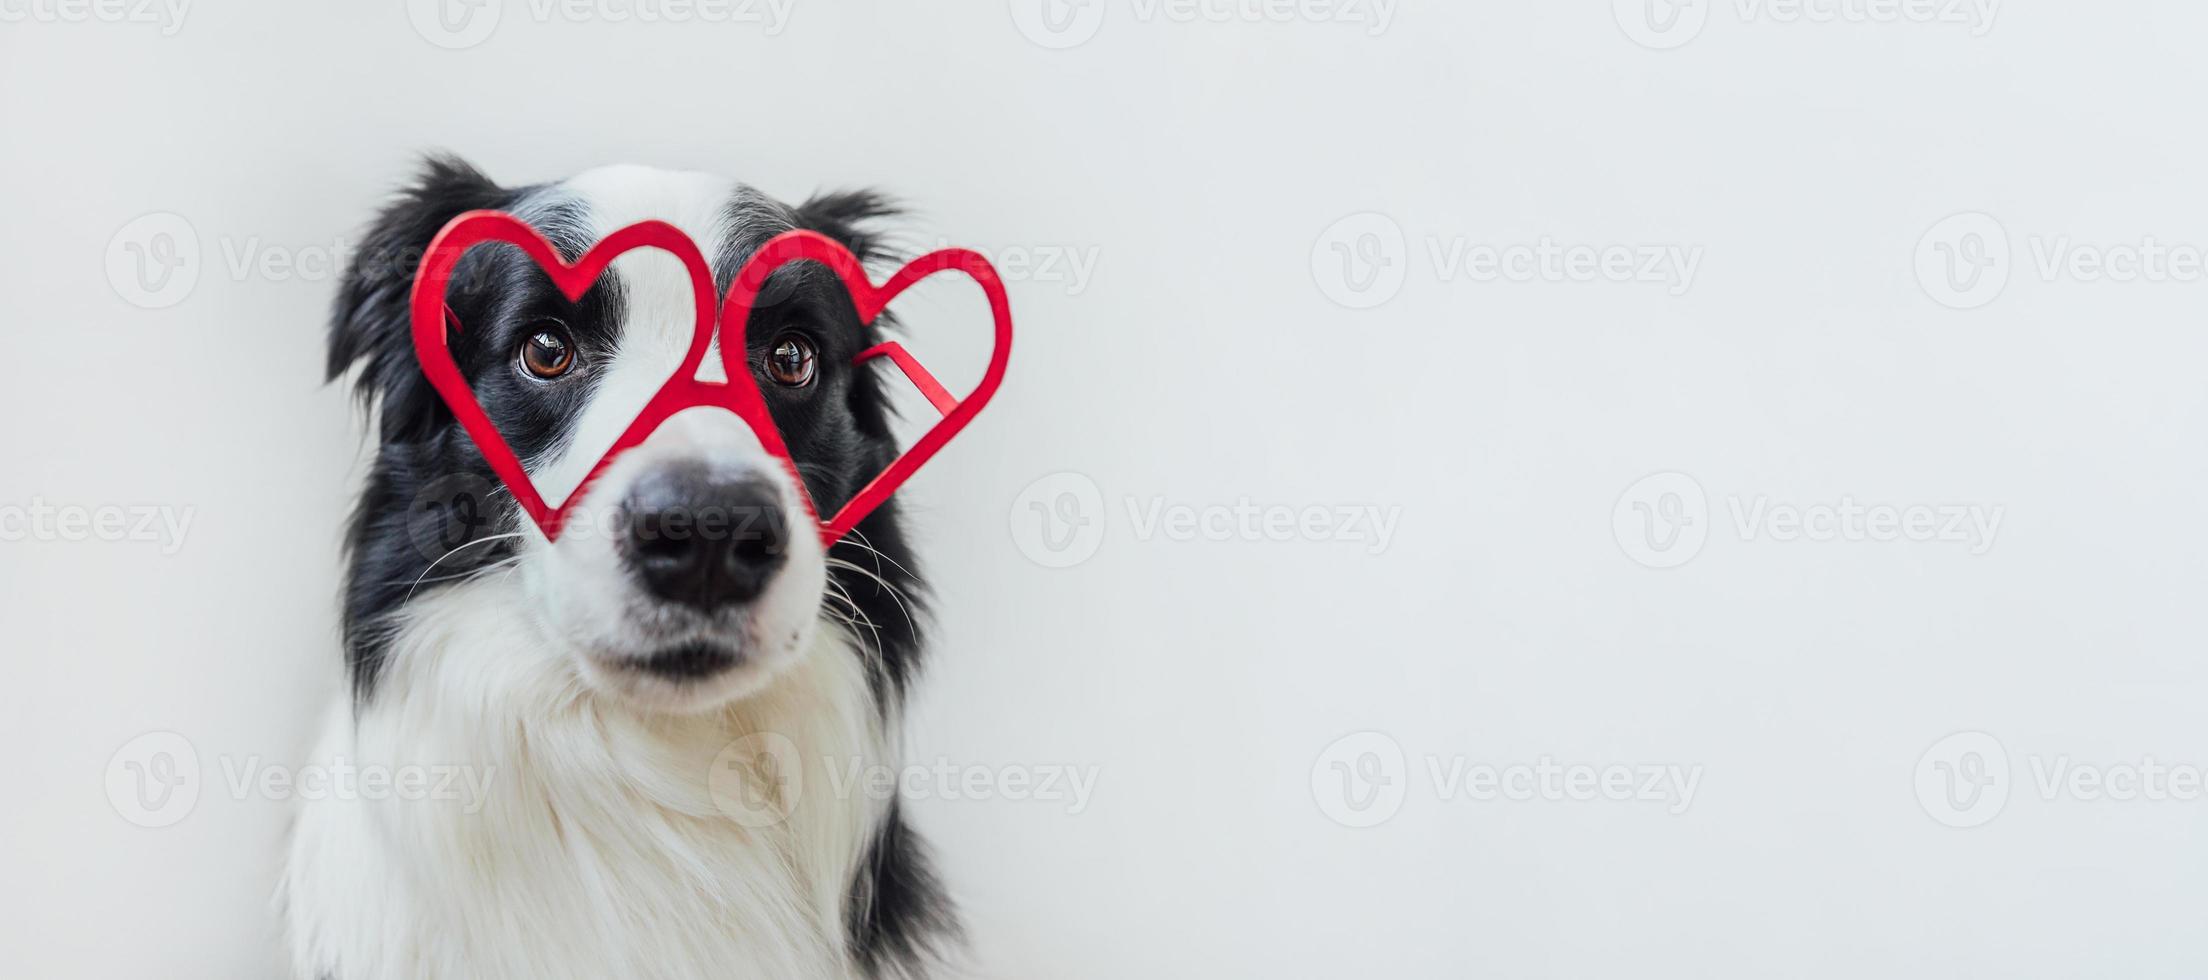 st. alla hjärtans dag koncept. rolig hundvalp border collie i röda hjärtformade glas isolerad på vit bakgrund. härlig hund förälskad som firar alla hjärtans dag. älskar kärlekskrank romantik banner. foto